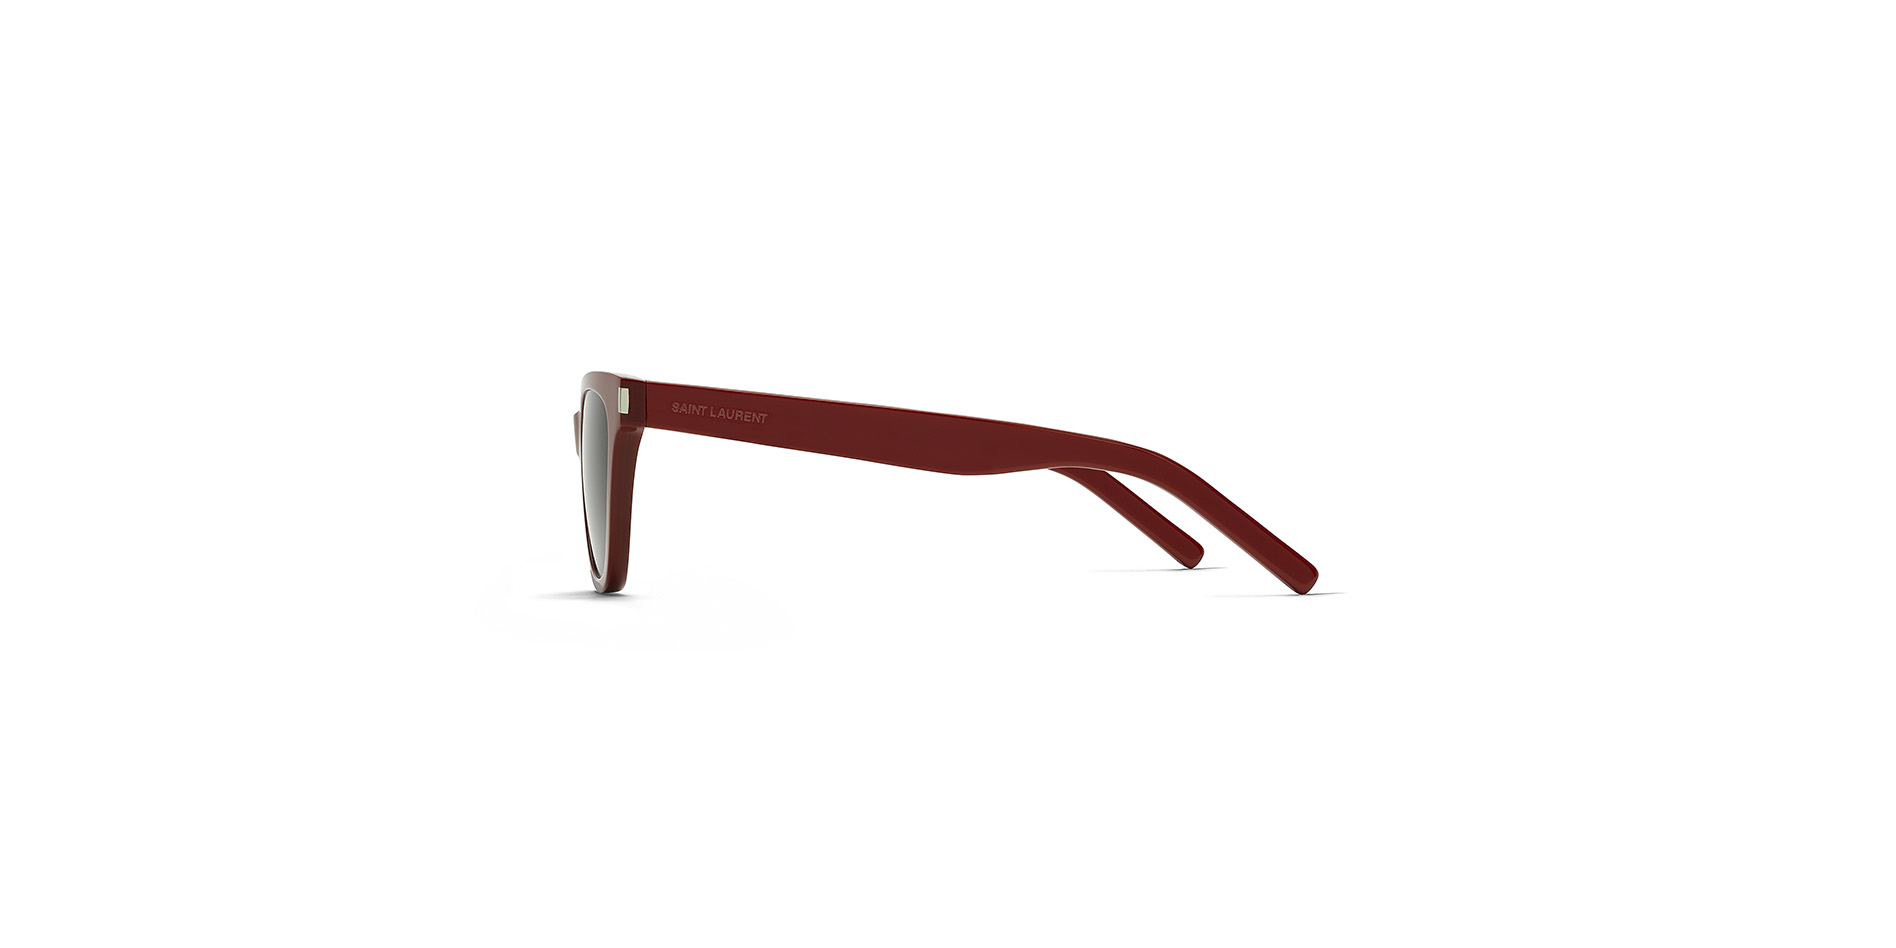 Damen-Sonnenbrille aus Acetat, Saint Laurent, SL 51 SMALL